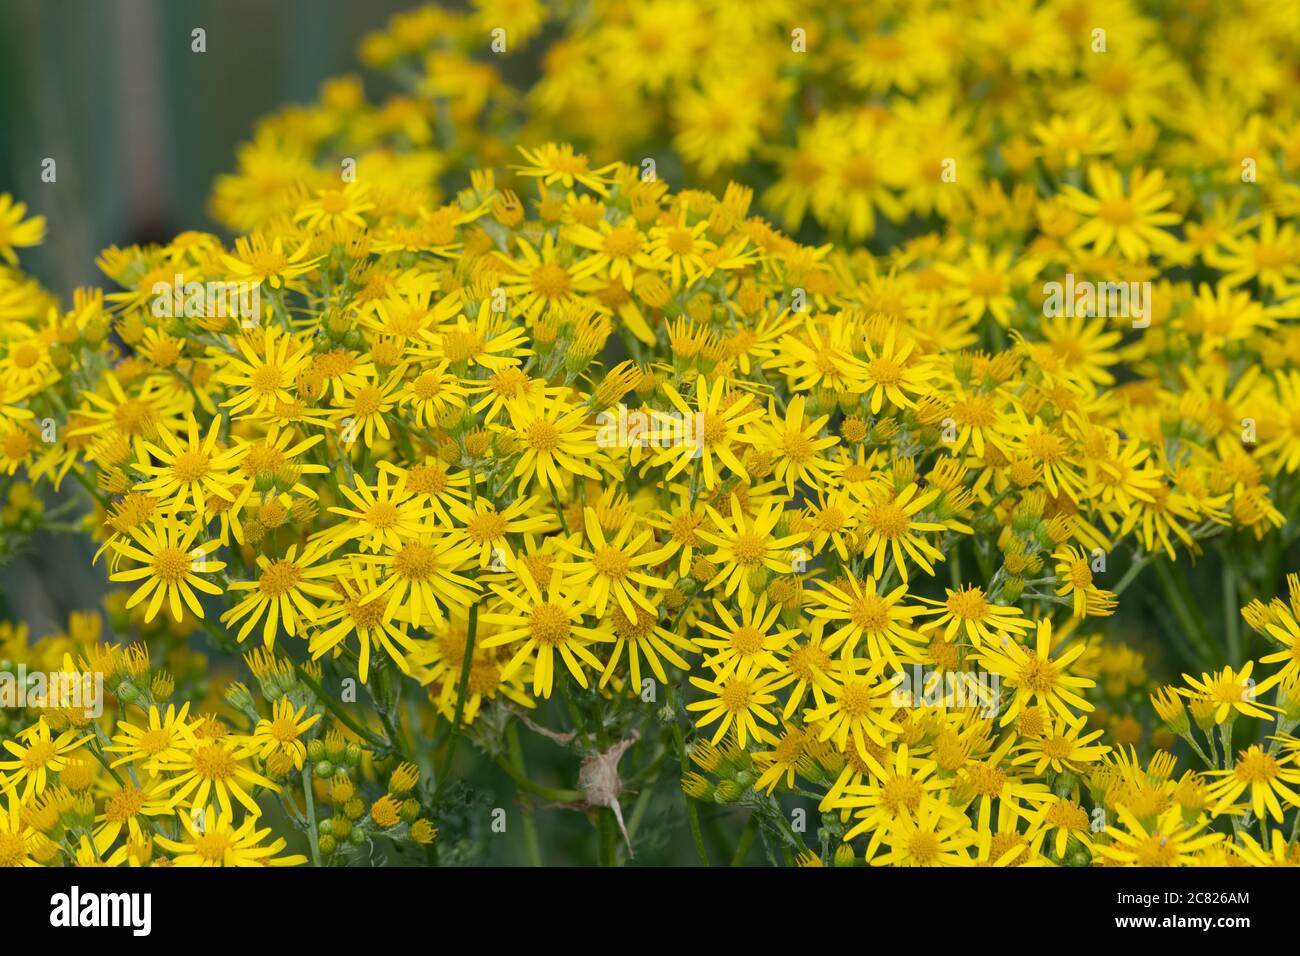 Nahaufnahme von Blüten auf einer gemeinsamen Ragwurz (jacobaea vulgaris) Pflanze Stockfoto